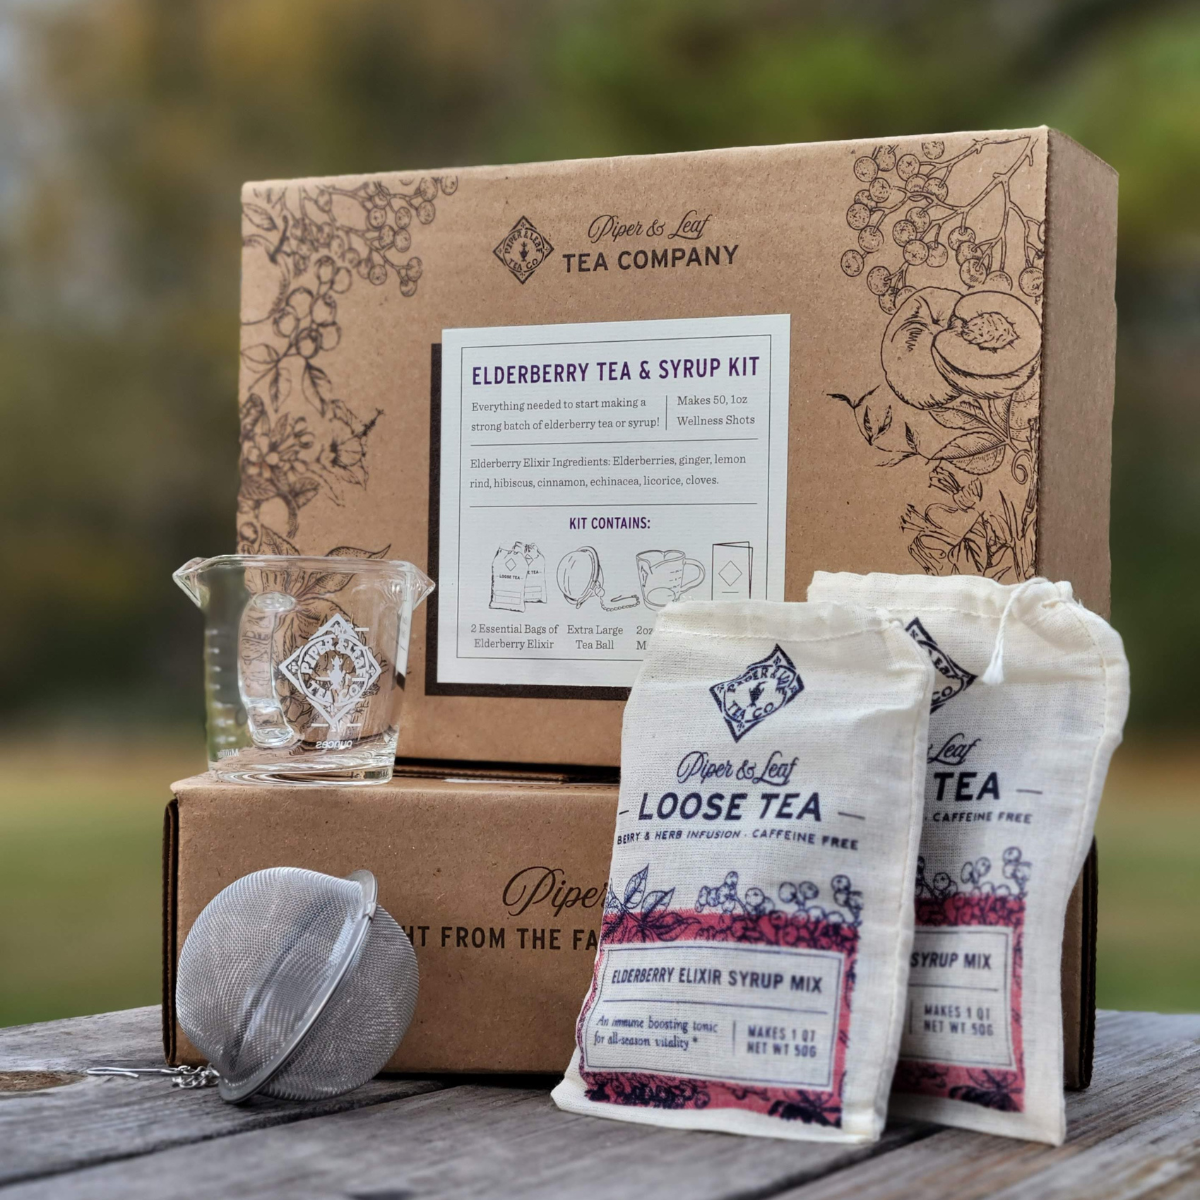 Elderberry Elixir tea and syrup kit